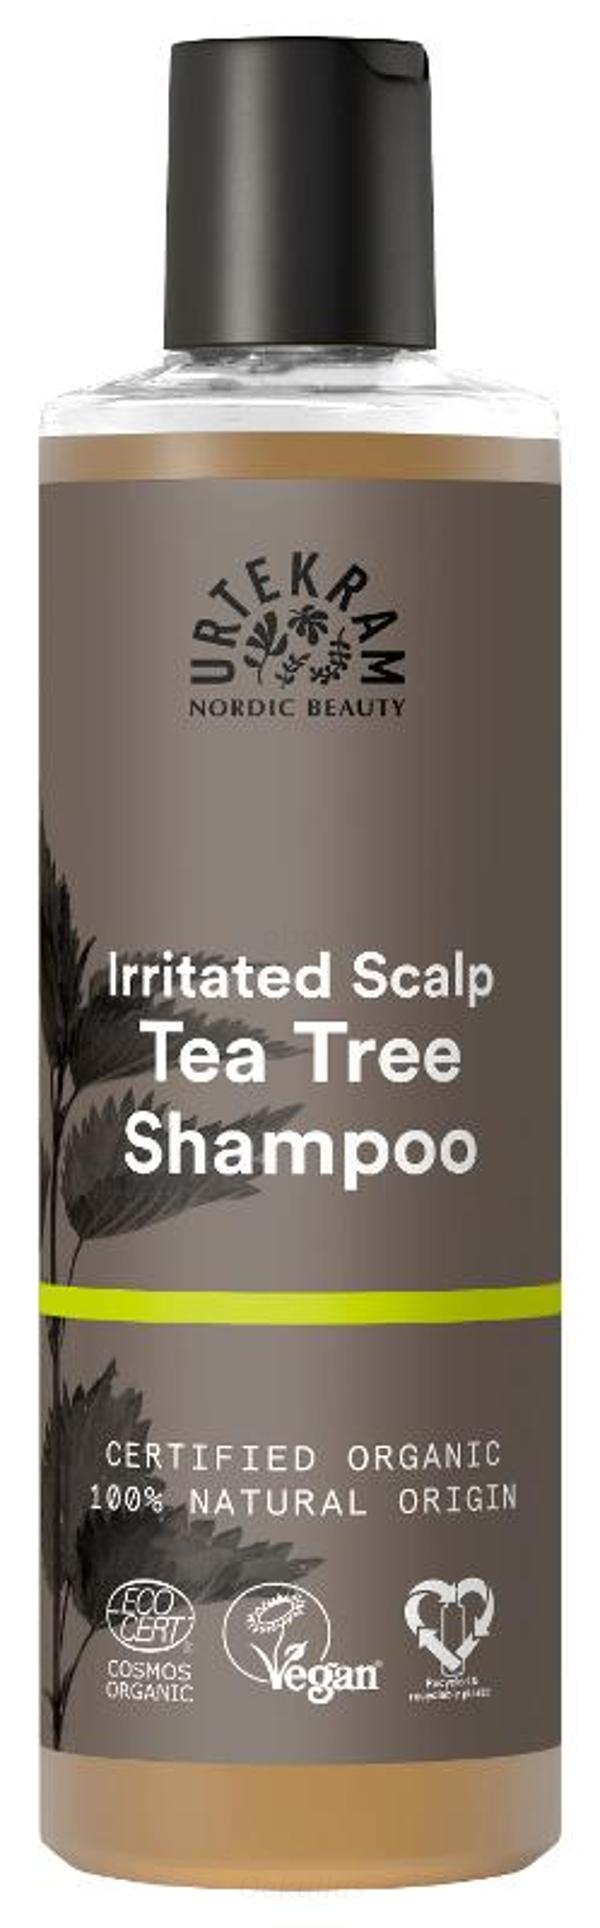 Produktfoto zu Teebaum Shampoo